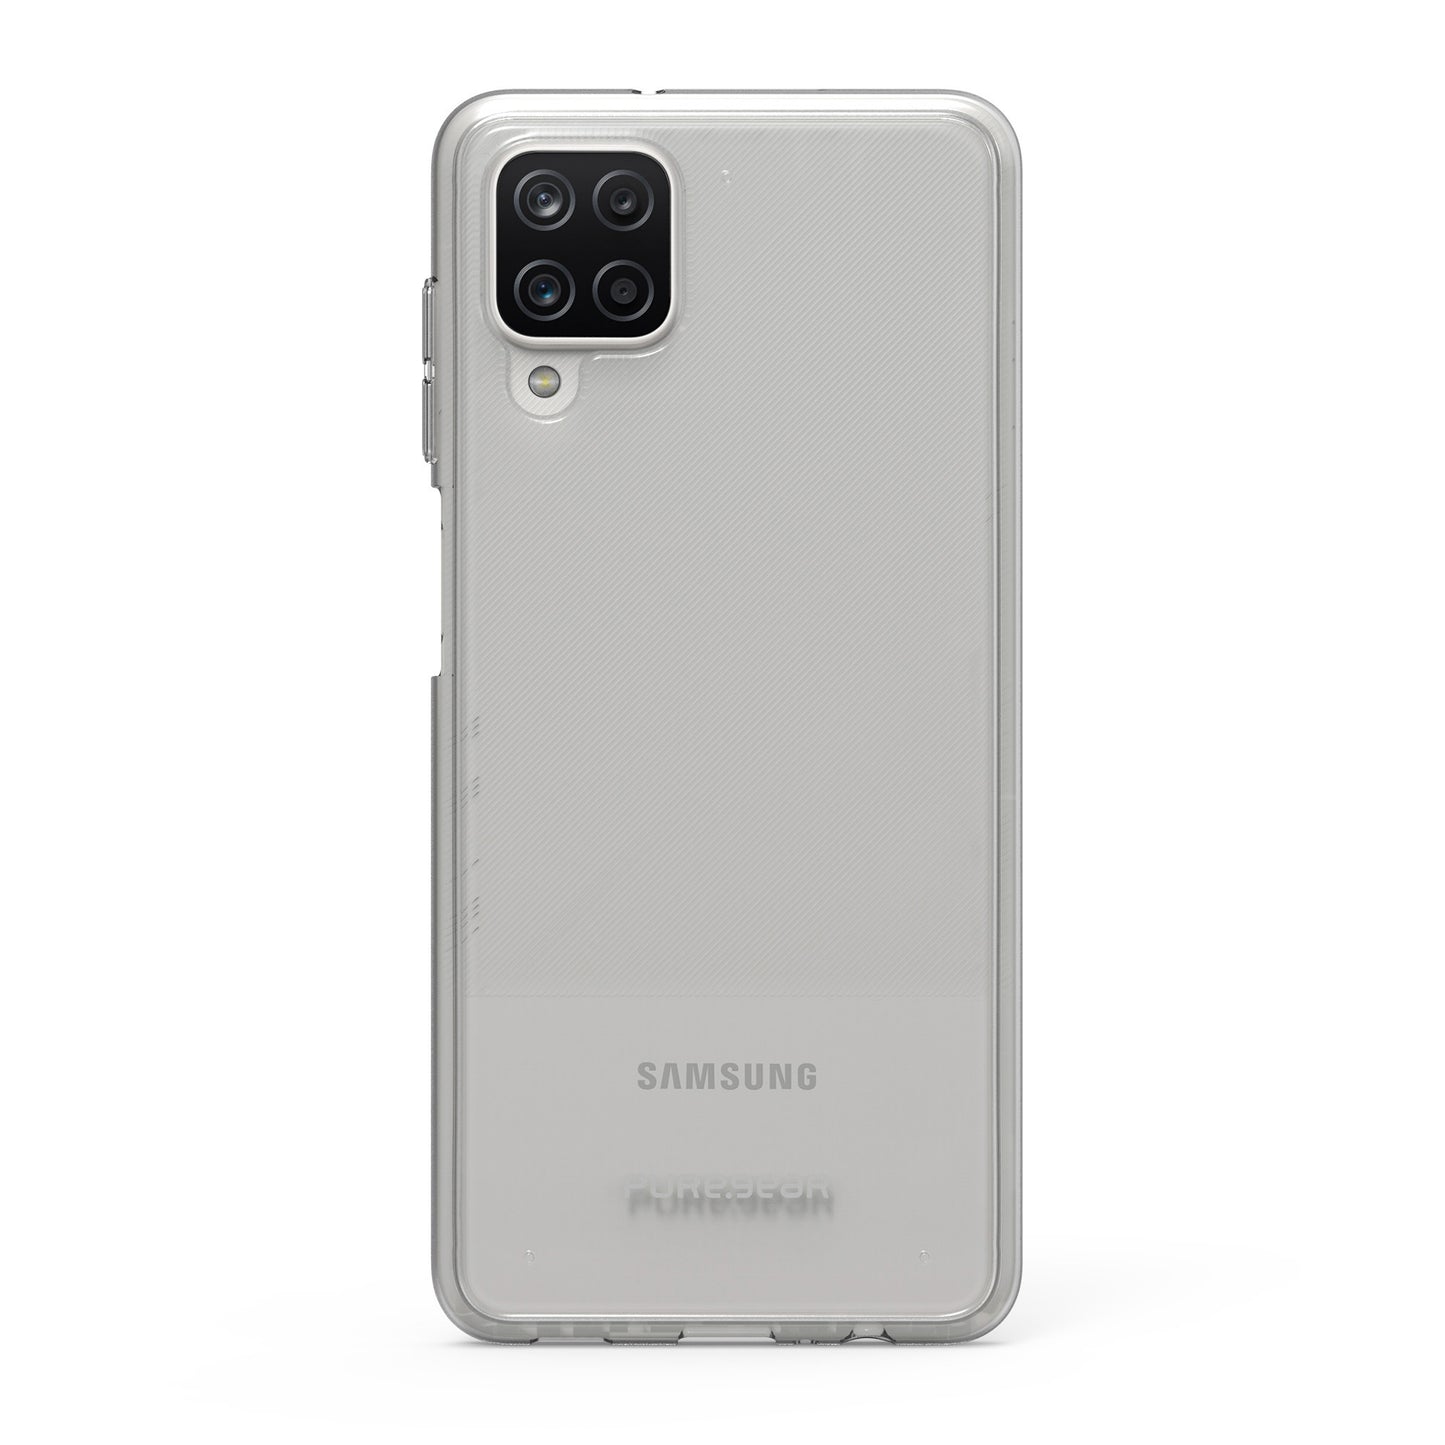 Samsung Galaxy A12 PureGear Clear Slim Shell Case w/Anti-Yellowing Coating - 15-08702